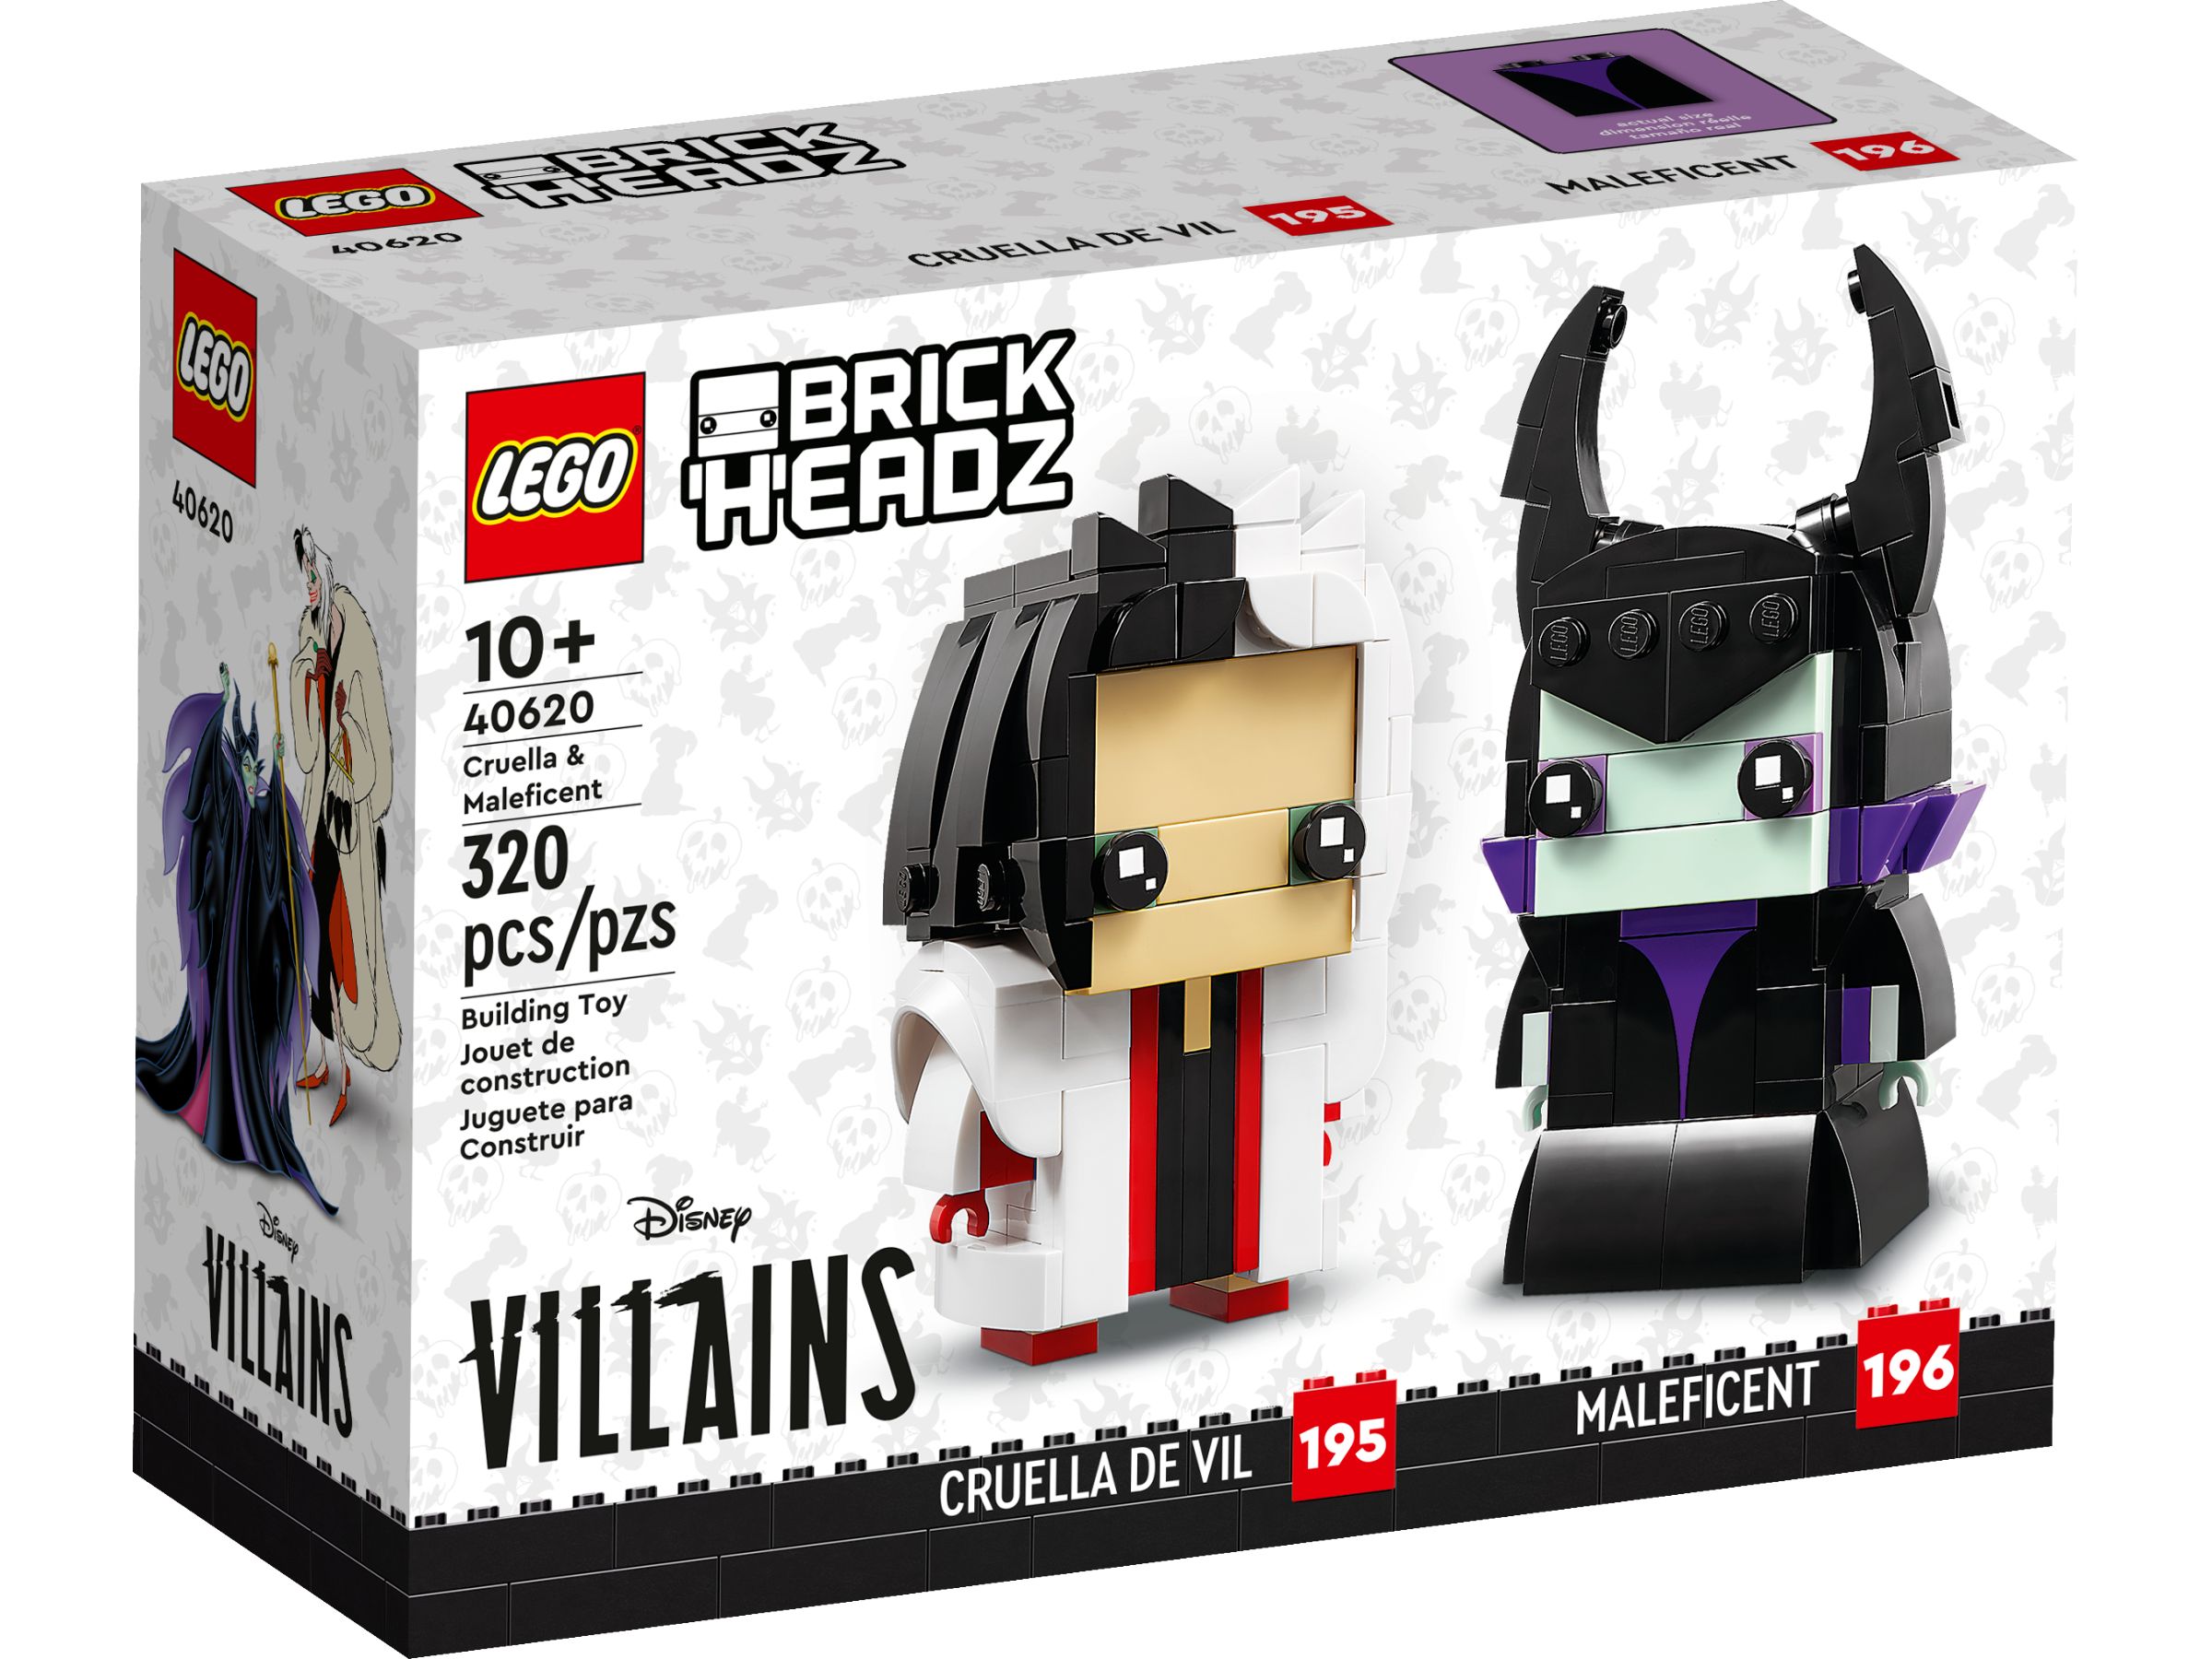 LEGO BrickHeadz 40620 Cruella und Maleficent LEGO_40620_alt1.jpg